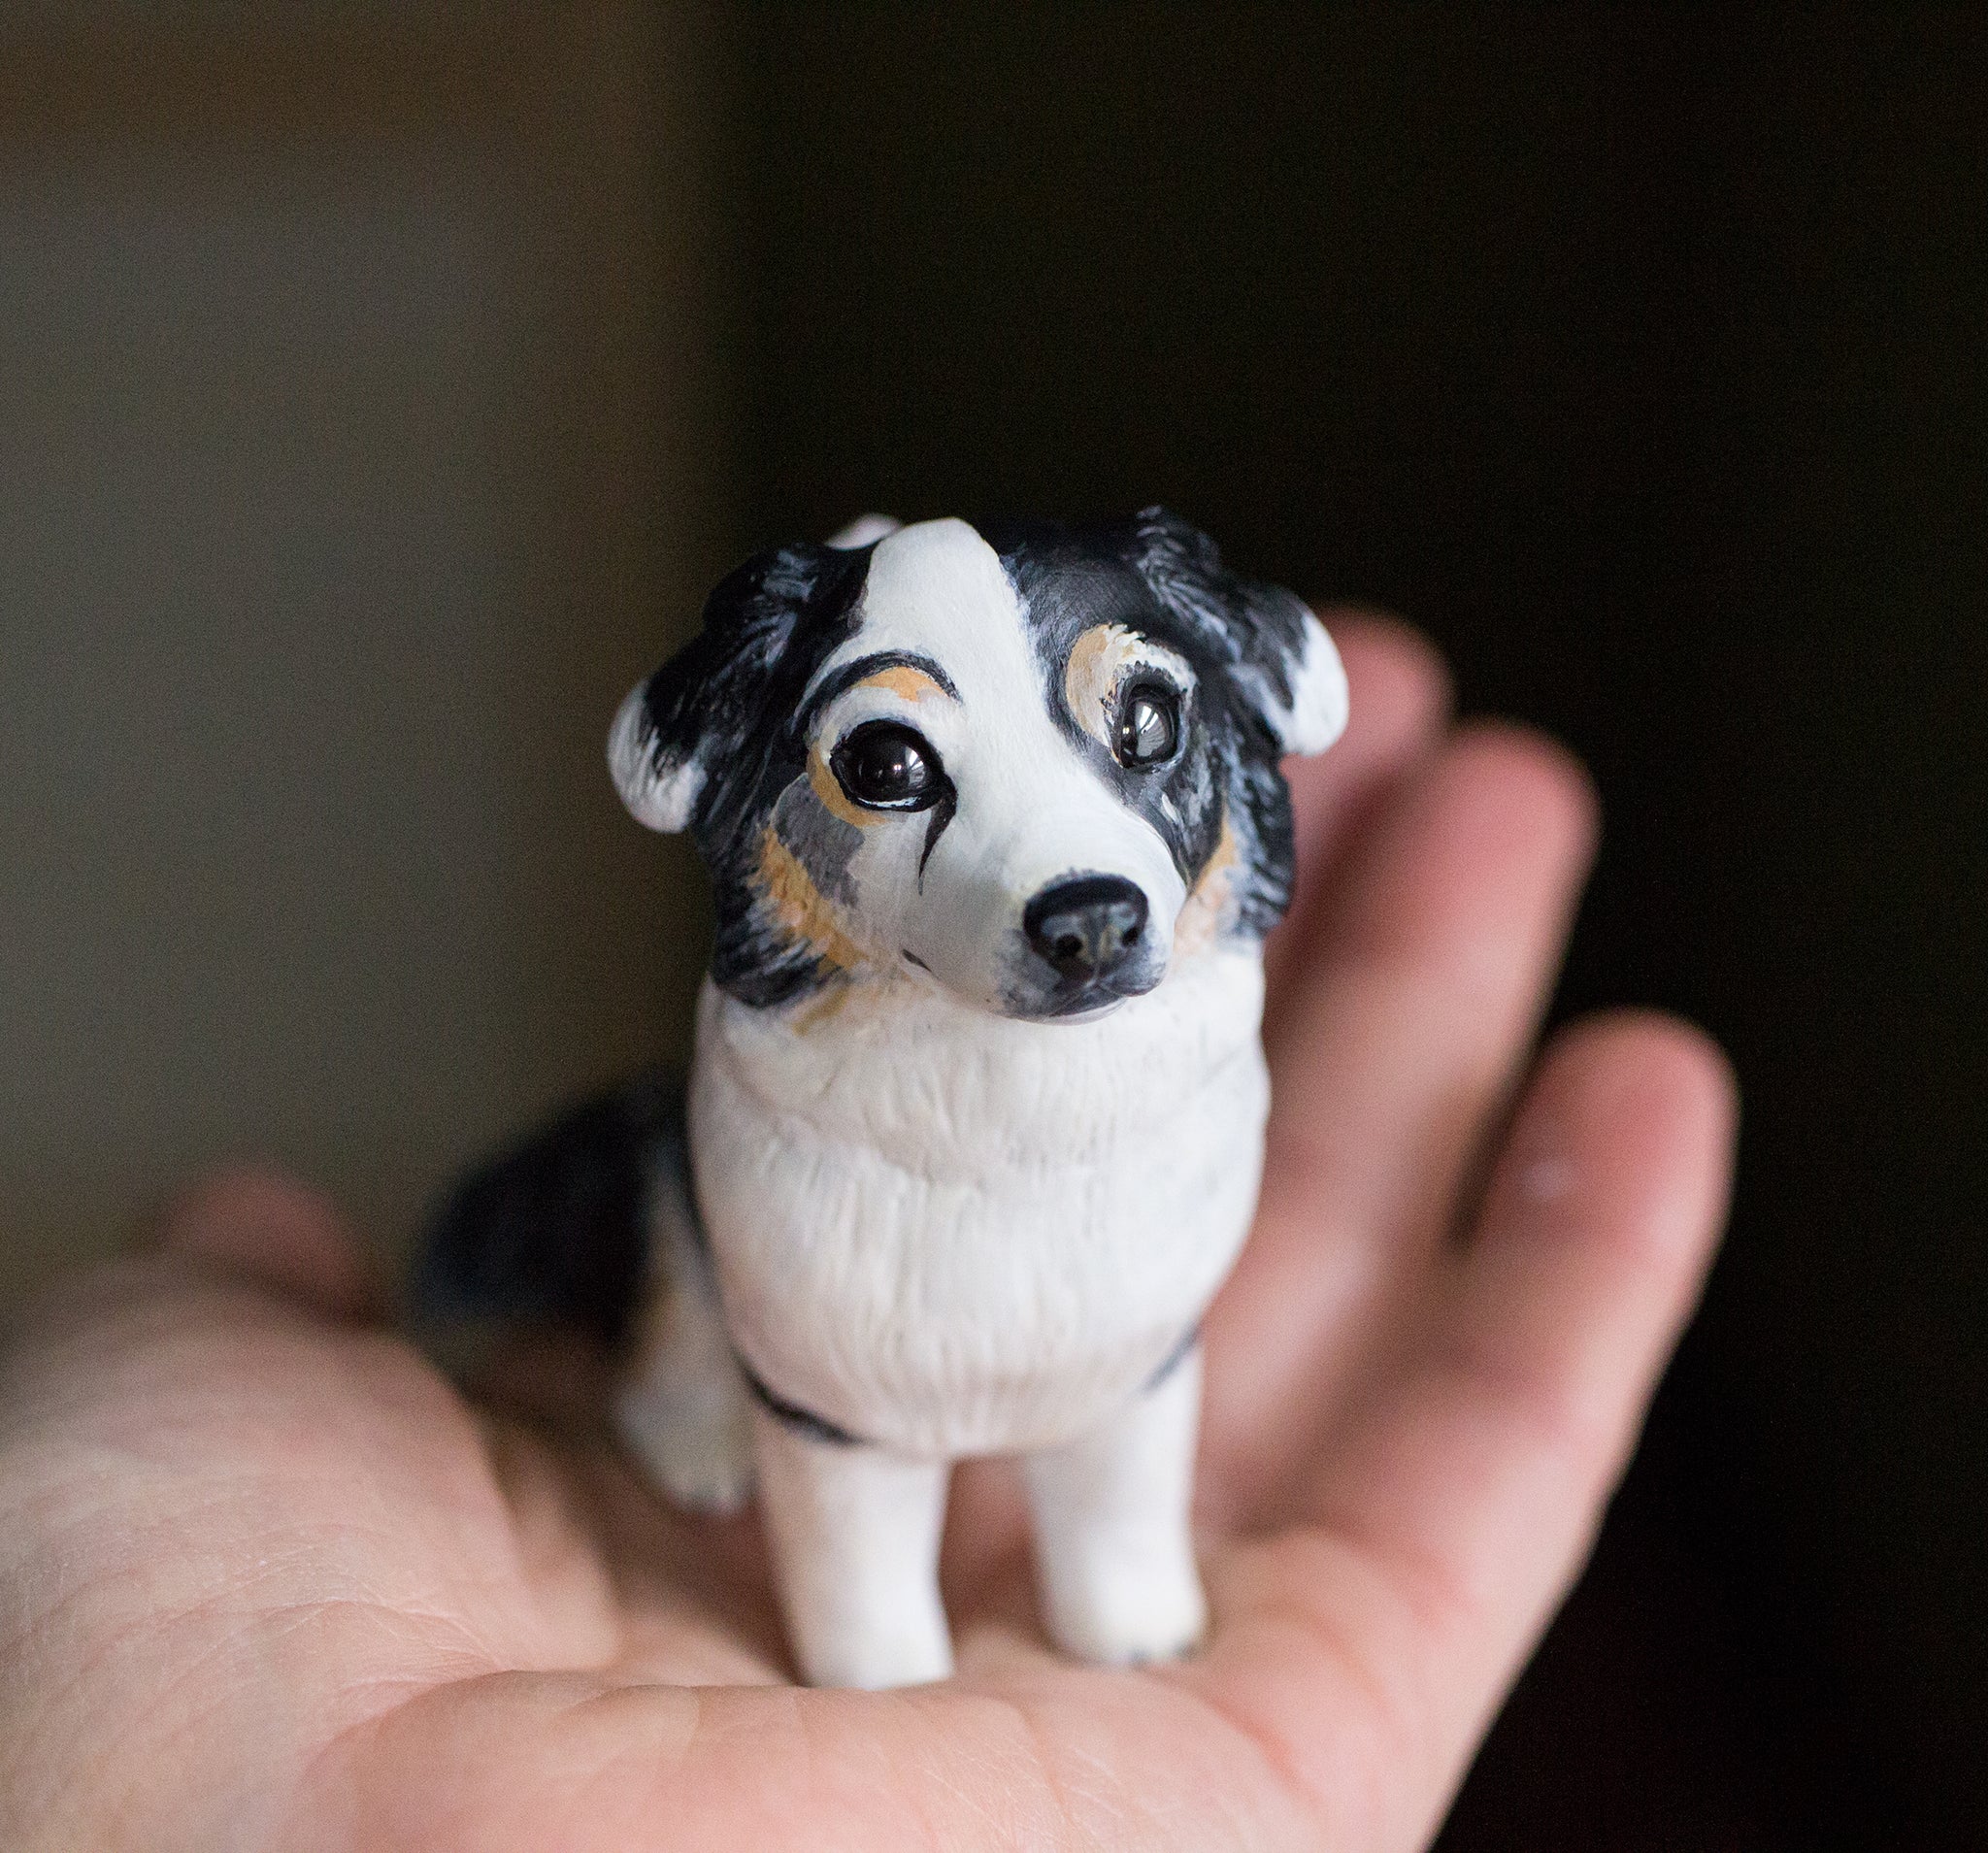 RESERVED Custom Dog Figurine